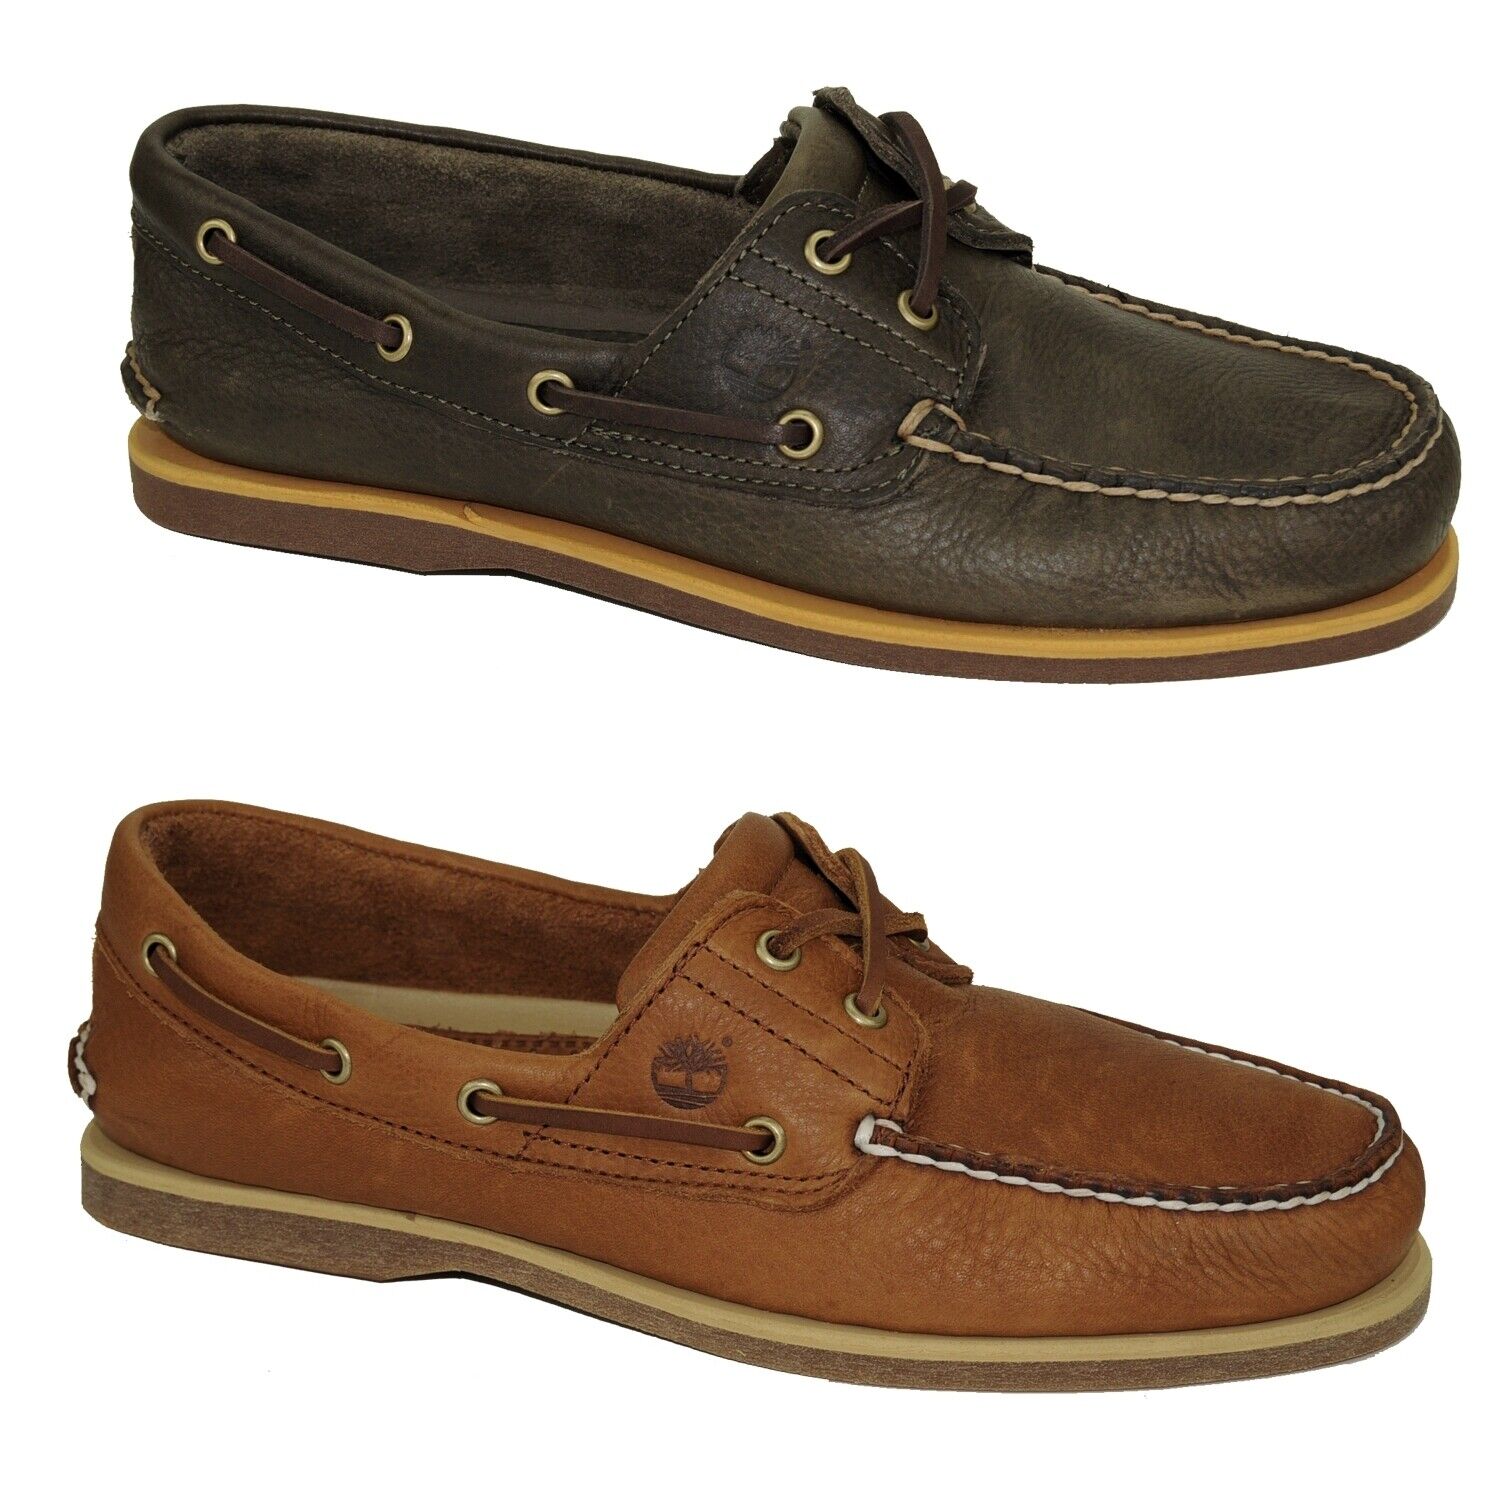 Timberland Classic Boat Shoes 2-Eye Deckschuhe Segelschuhe Herren Schuhe Modell- Farbe A2AFN - Braun Schuhgröße EUR 41 US 7,5